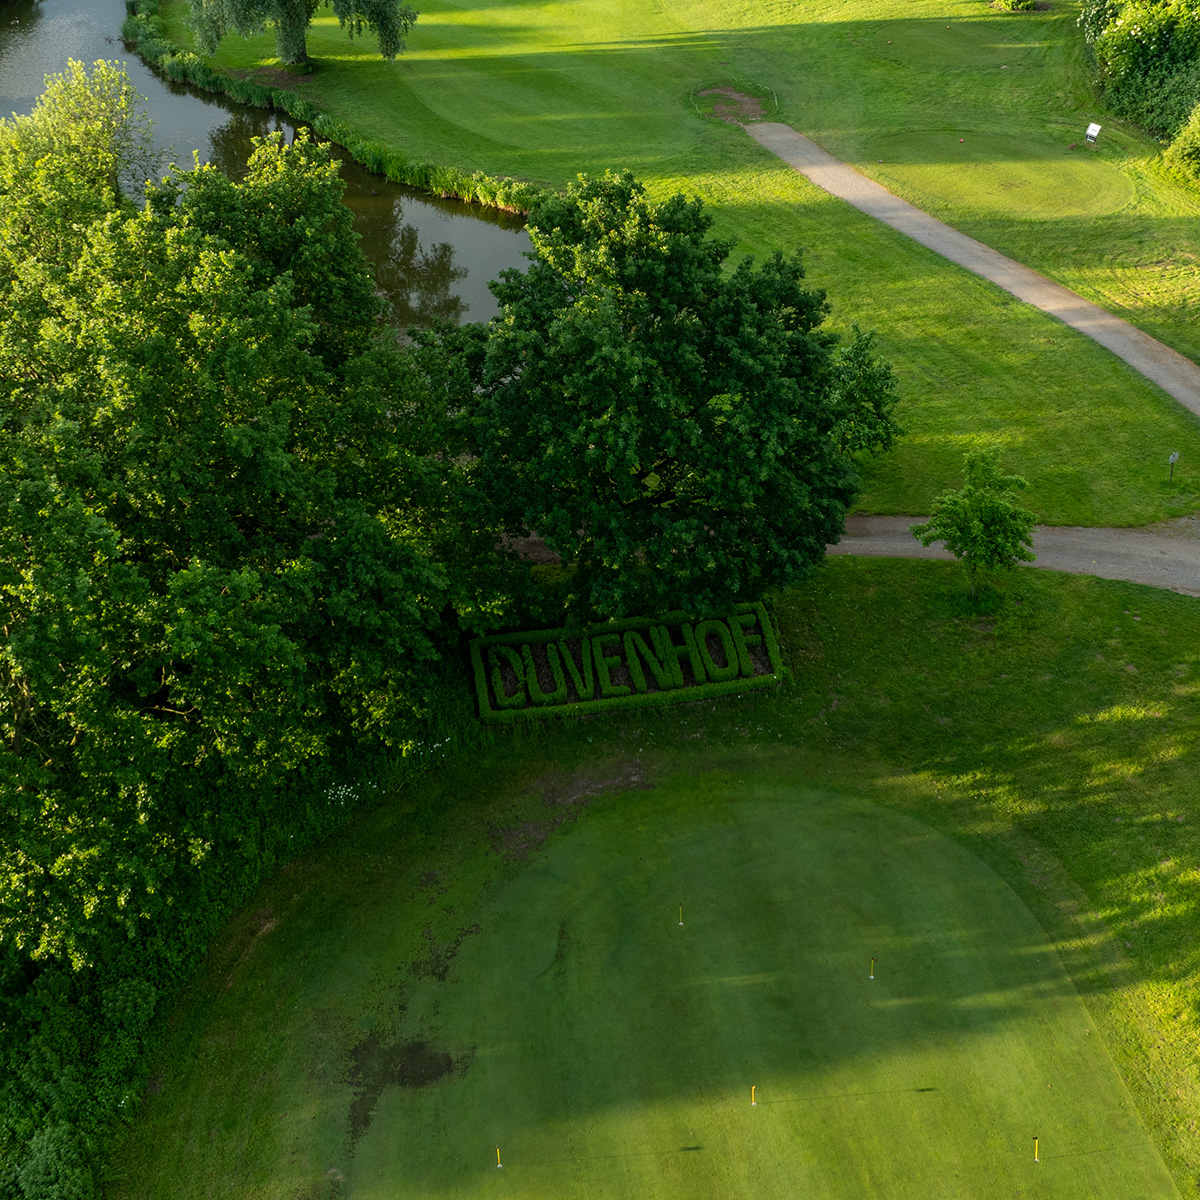 Luftaufnahme eines Golfplatzes mit gepflegtem Rasen, einem Weg und einem kleinen Teich. Im Vordergrund ist der Schriftzug "DUVENHOF" in die Hecke geschnitten.